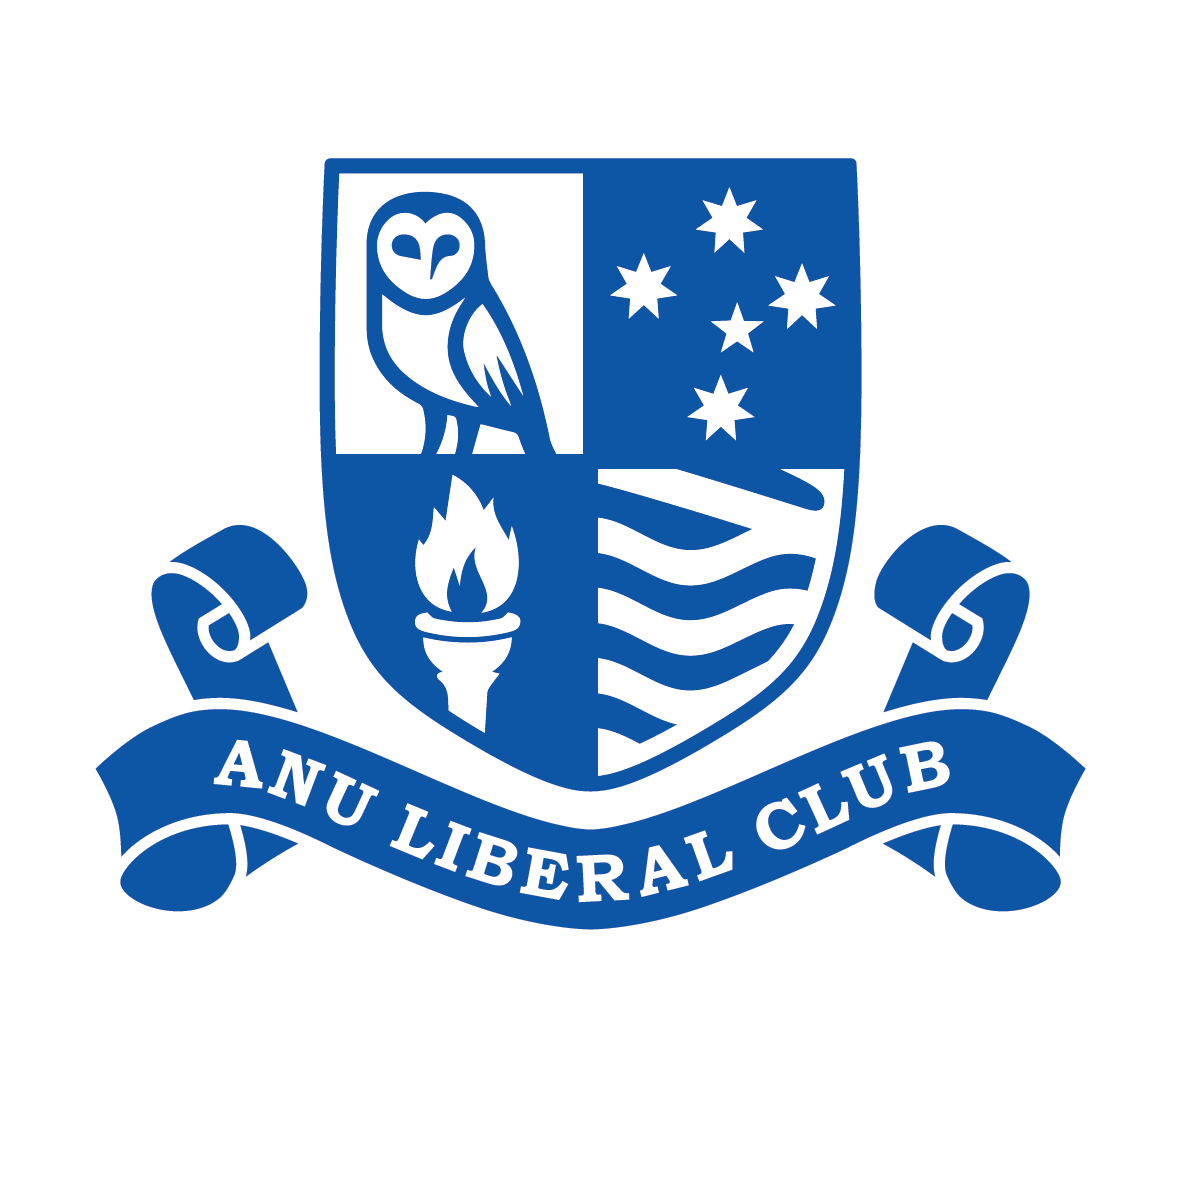 ANU Liberal Club